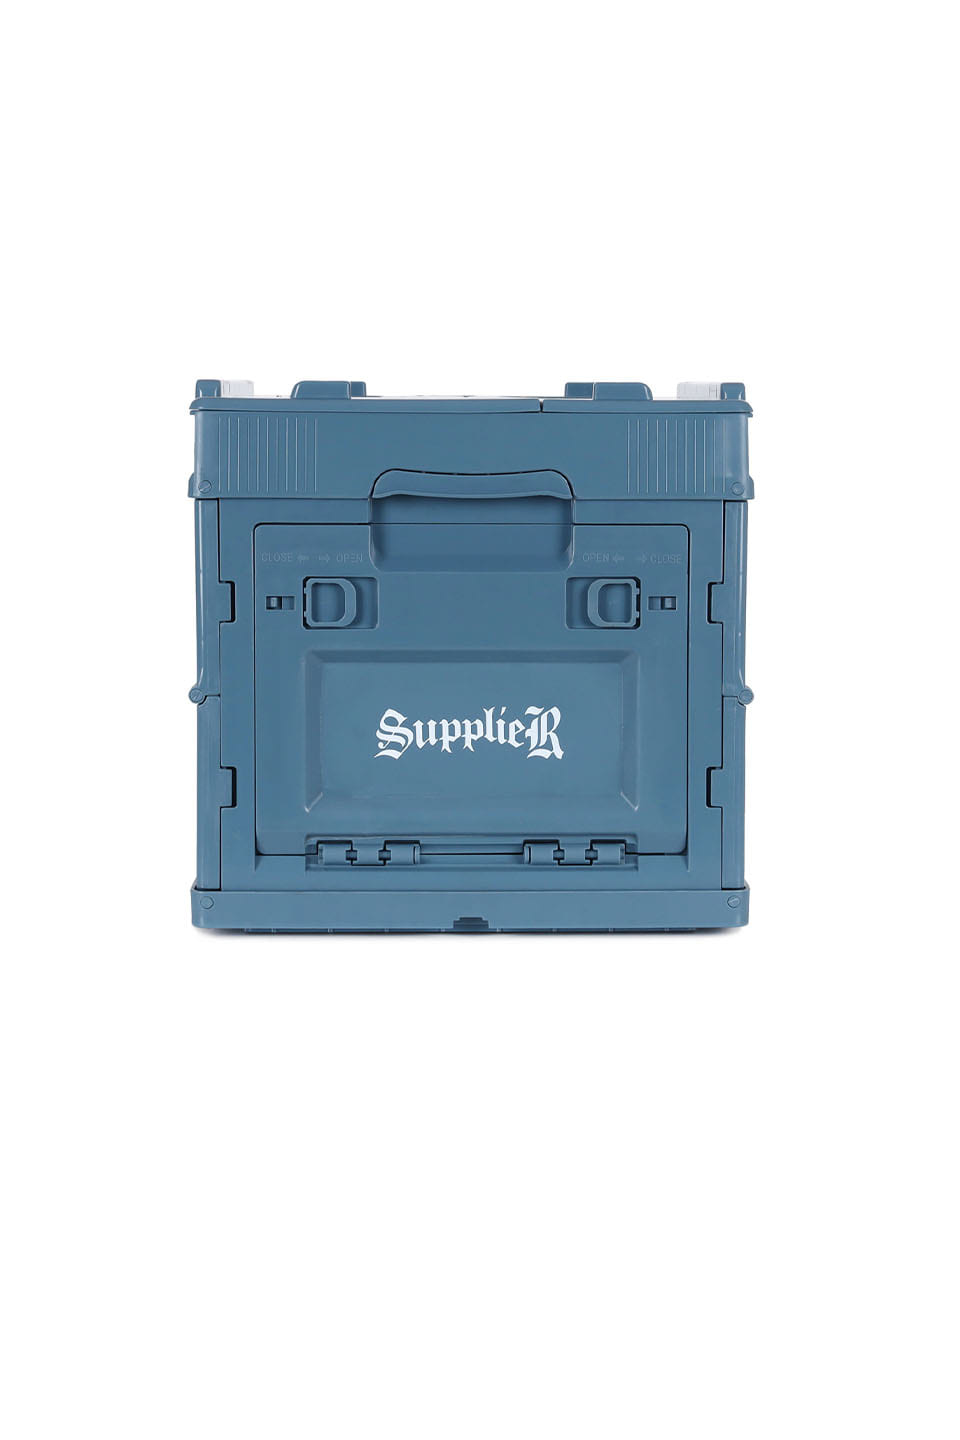 Supplier Mini Box 18L